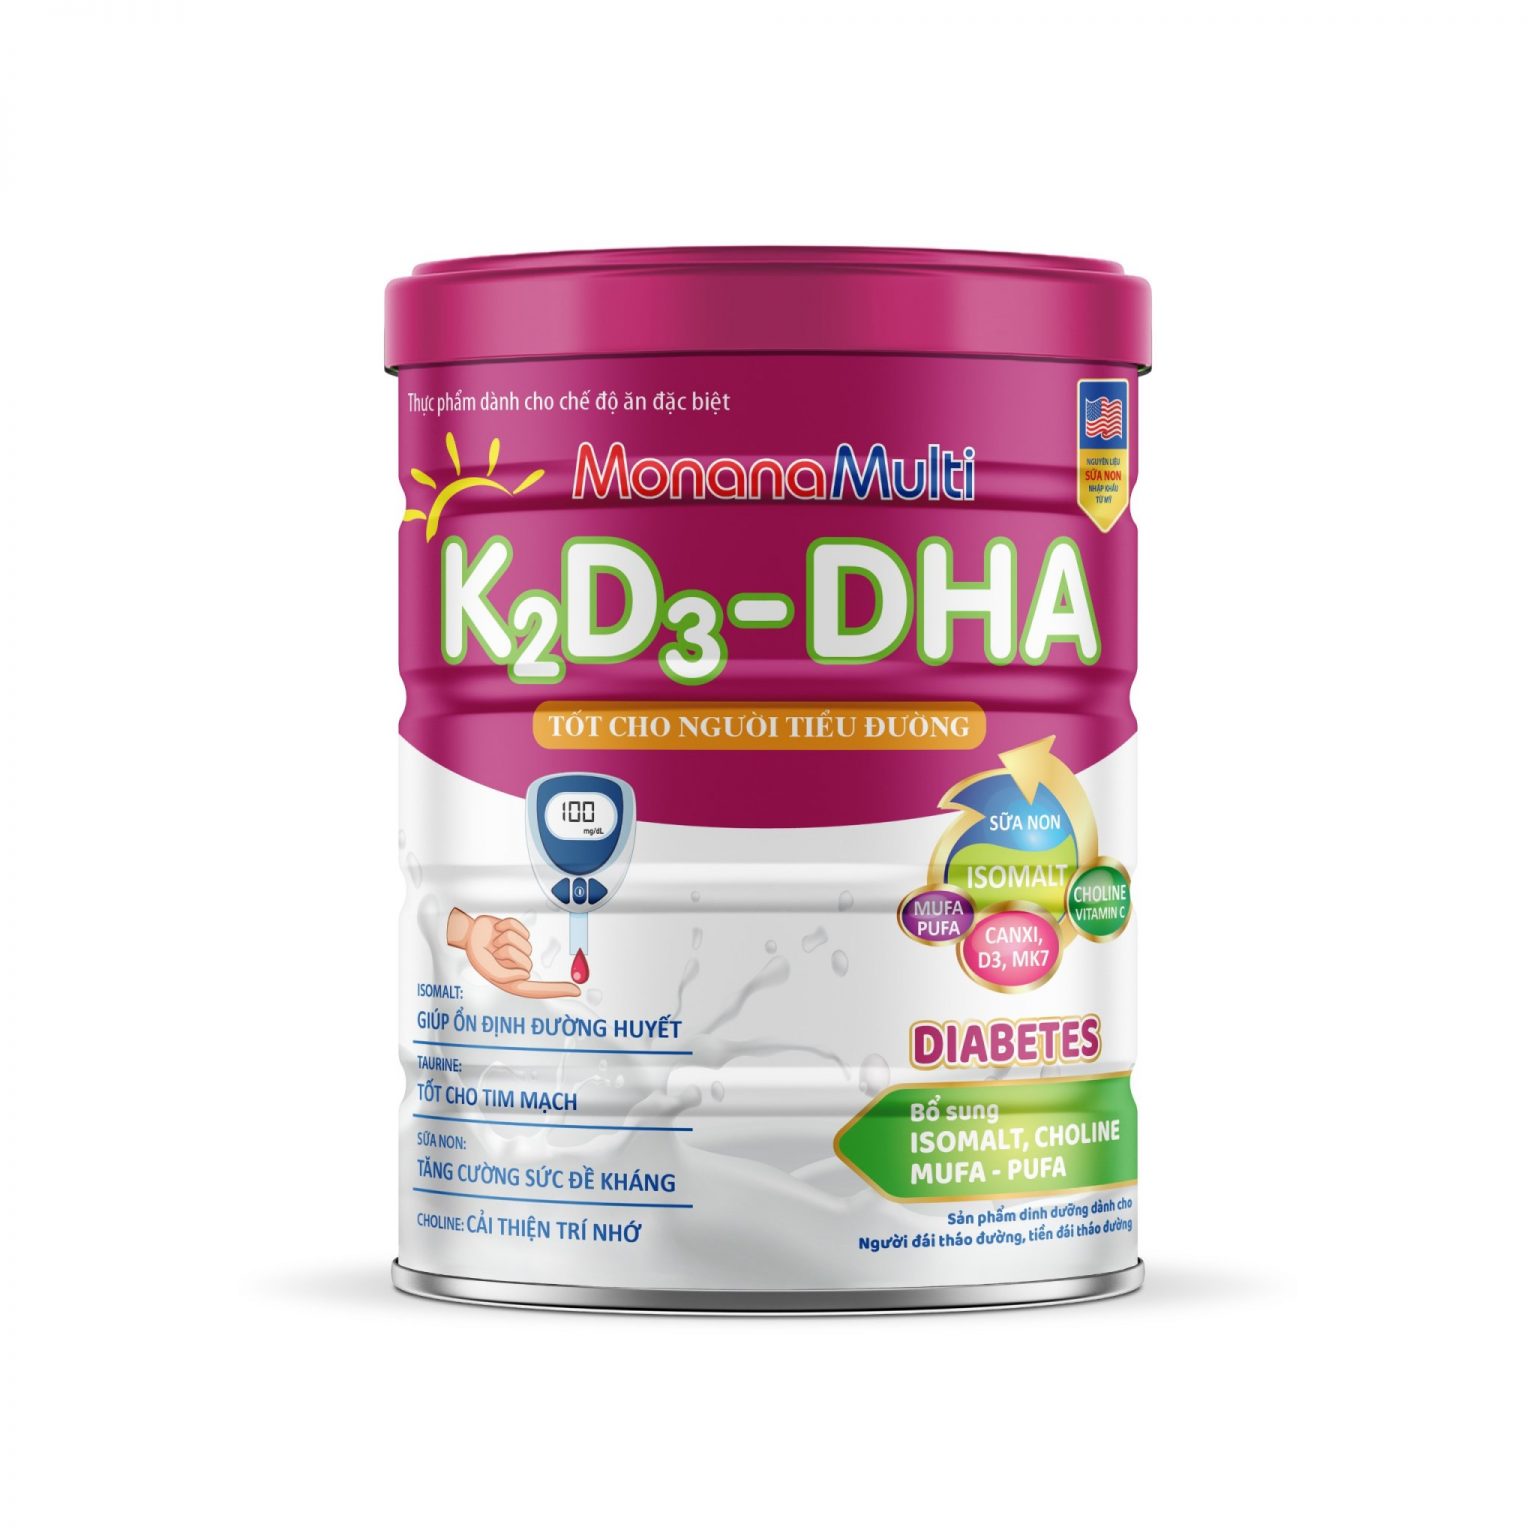 MonanaMulti K2D3-DHA Diabetes - Dành Cho Người Tiểu Đường